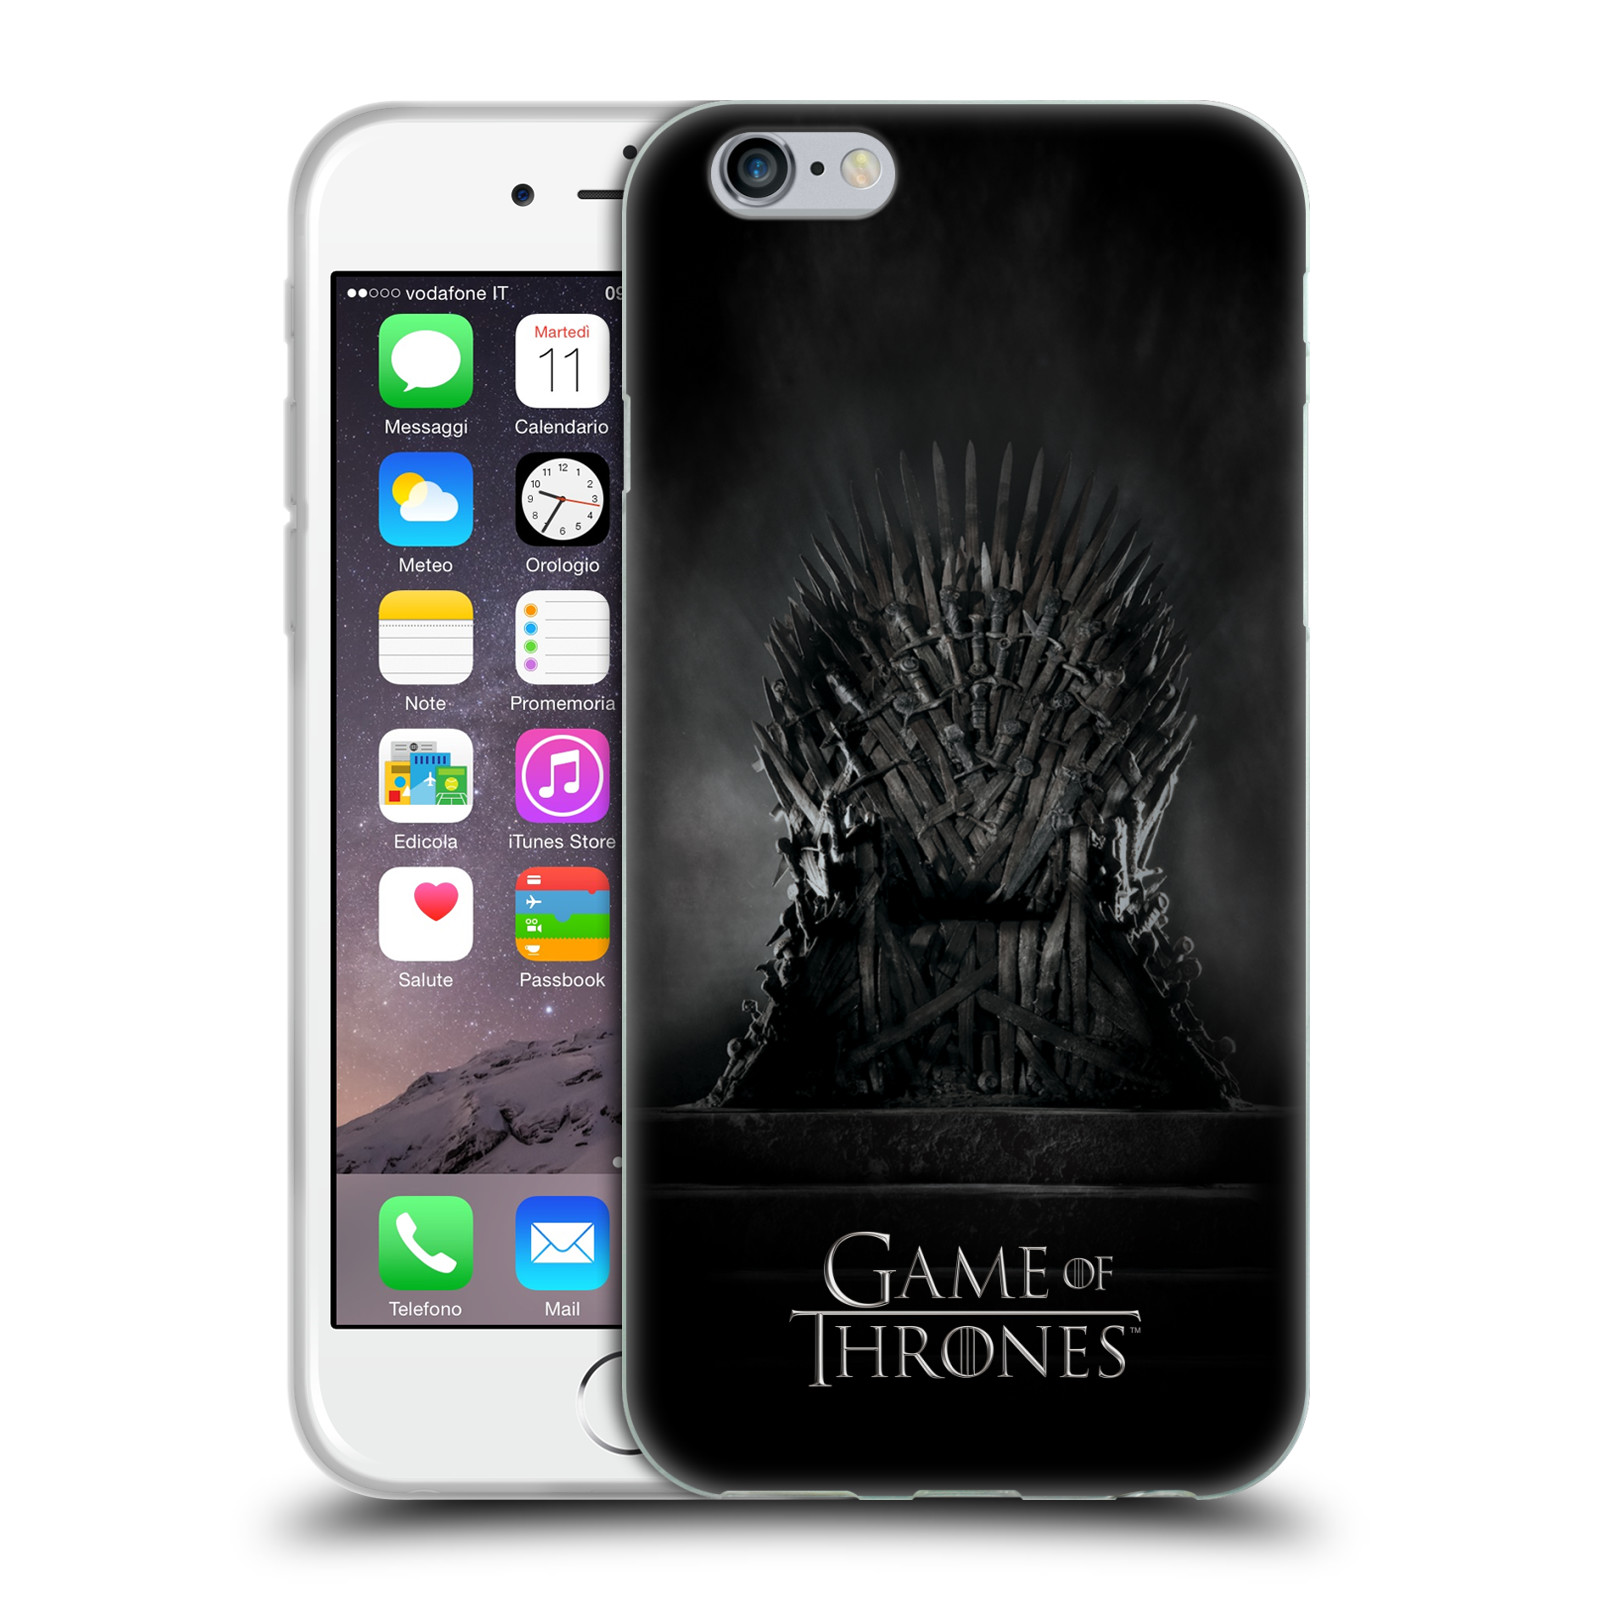 Silikonové pouzdro na mobil Apple iPhone 6 HEAD CASE Hra o trůny - Železný trůn (Silikonový kryt či obal na mobilní telefon s licencovaným motivem Hra o trůny / Game Of Thrones pro Apple iPhone 6)